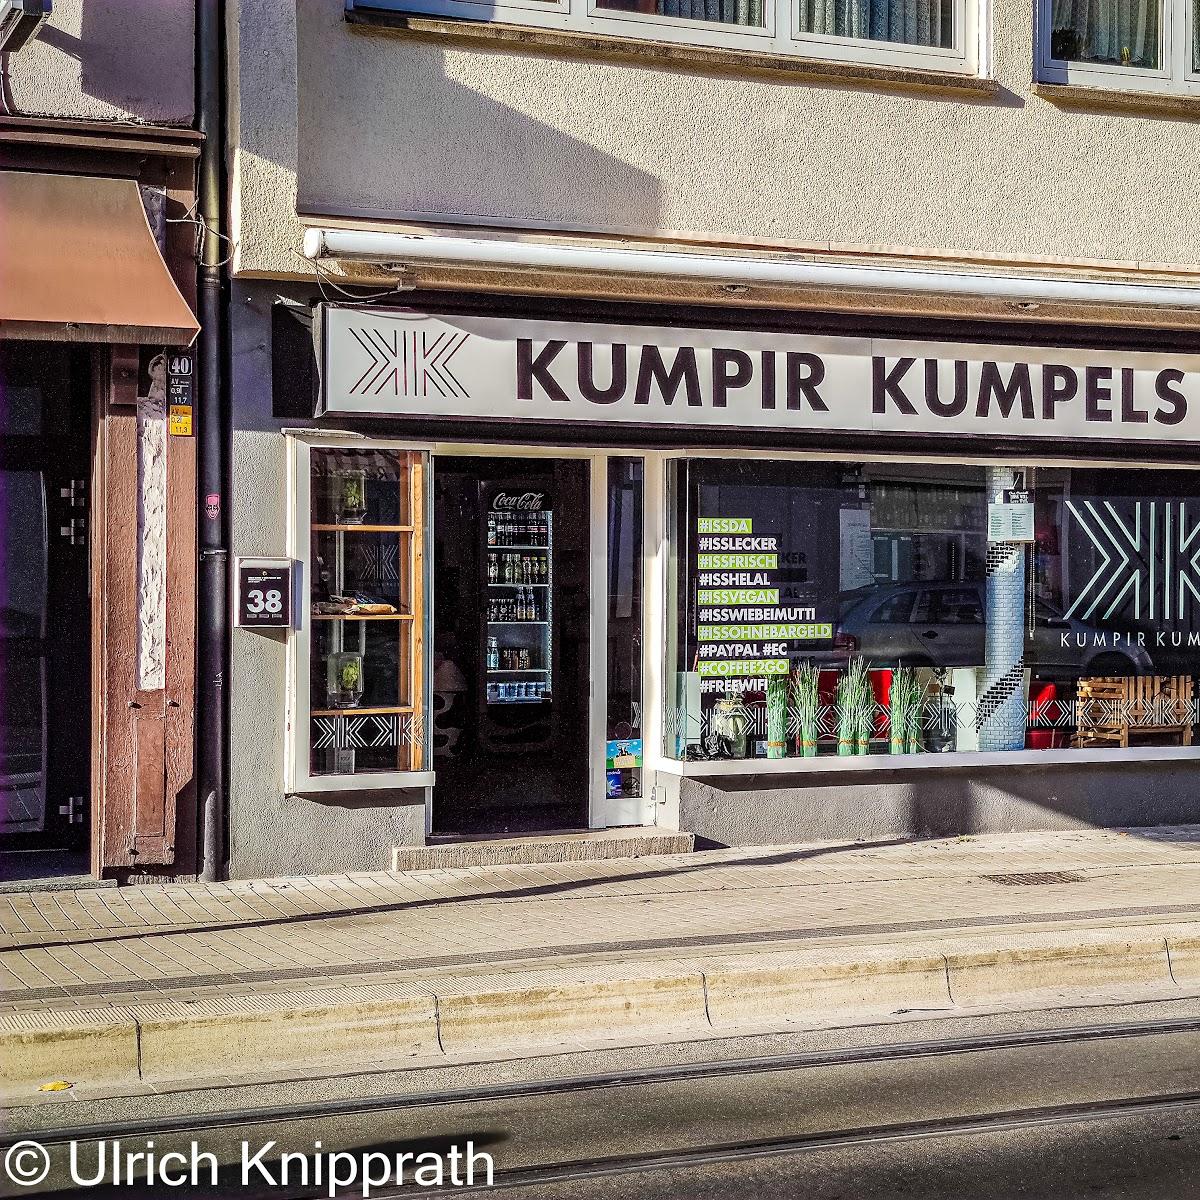 Restaurant "Kumpir Kumpels" in Essen